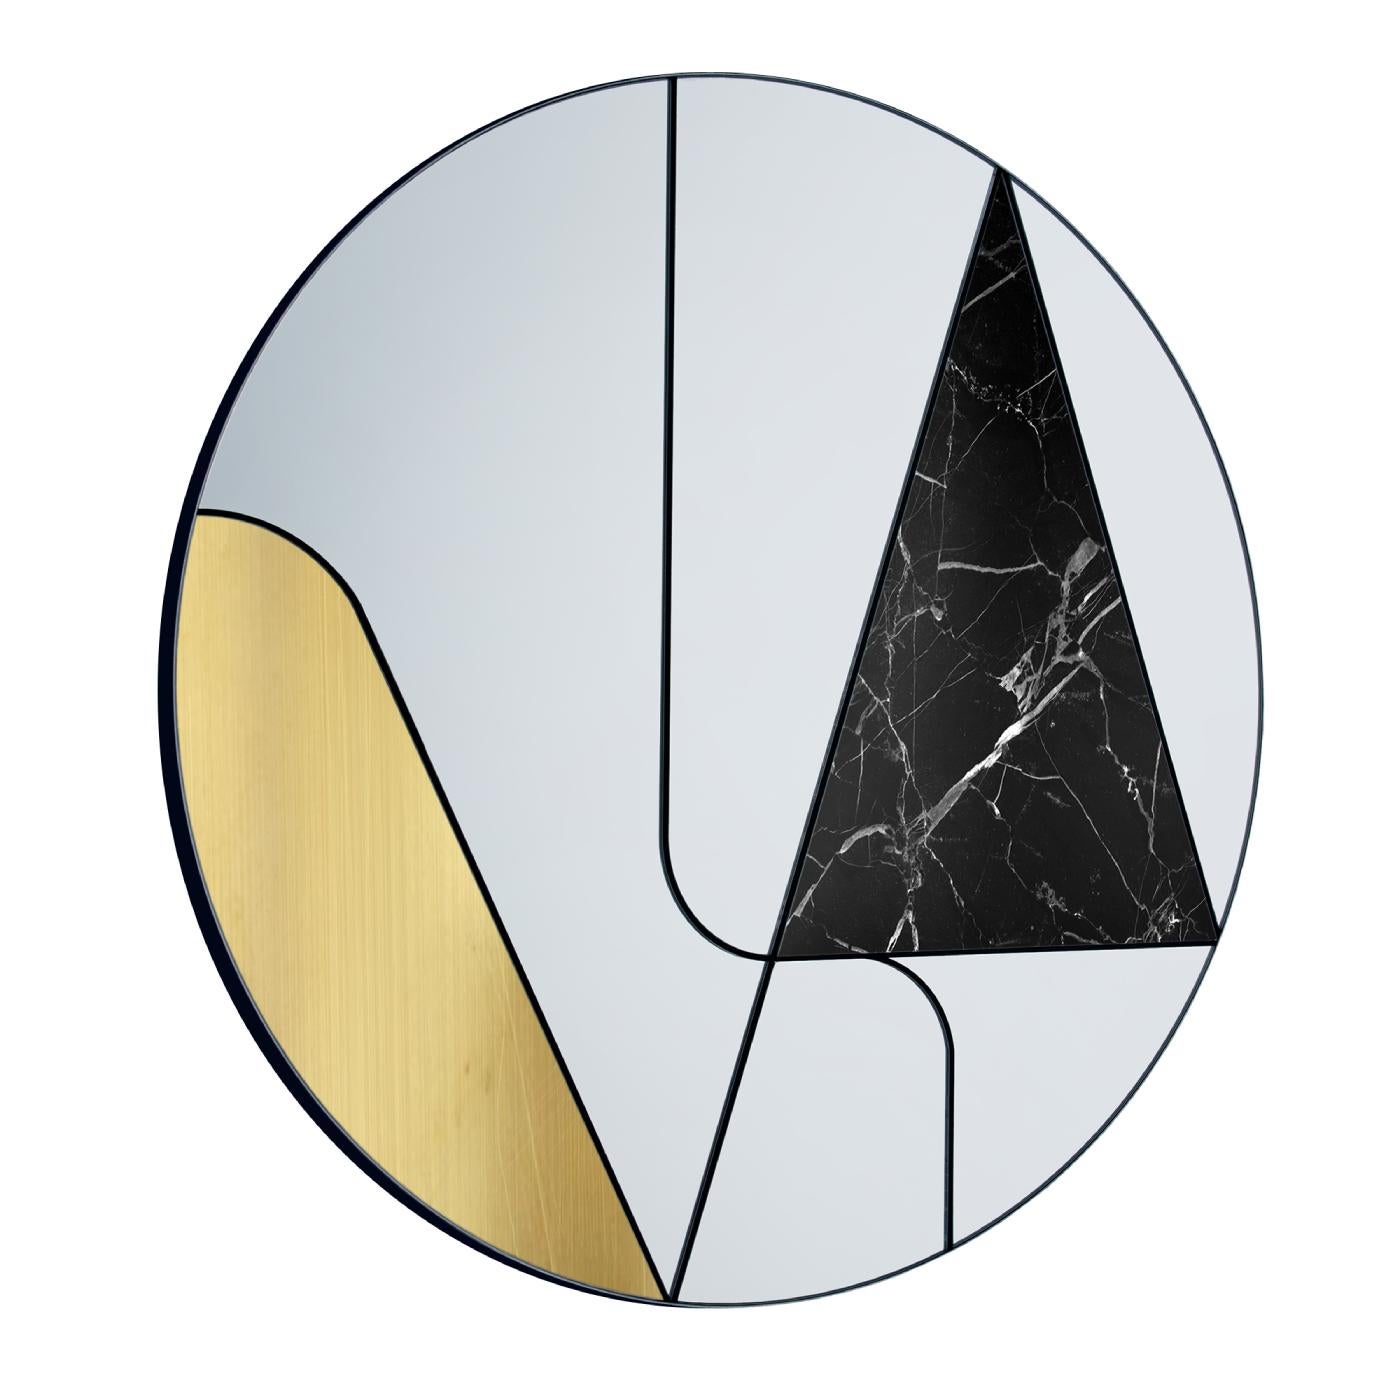 Une série de lignes découpe l'espace à l'intérieur du cadre rond de ce magnifique miroir. Les surfaces asymétriques du miroir sont ornées d'un insert incurvé en laiton brossé et d'une plaque triangulaire en marbre noir Marquina. Ce design captivant